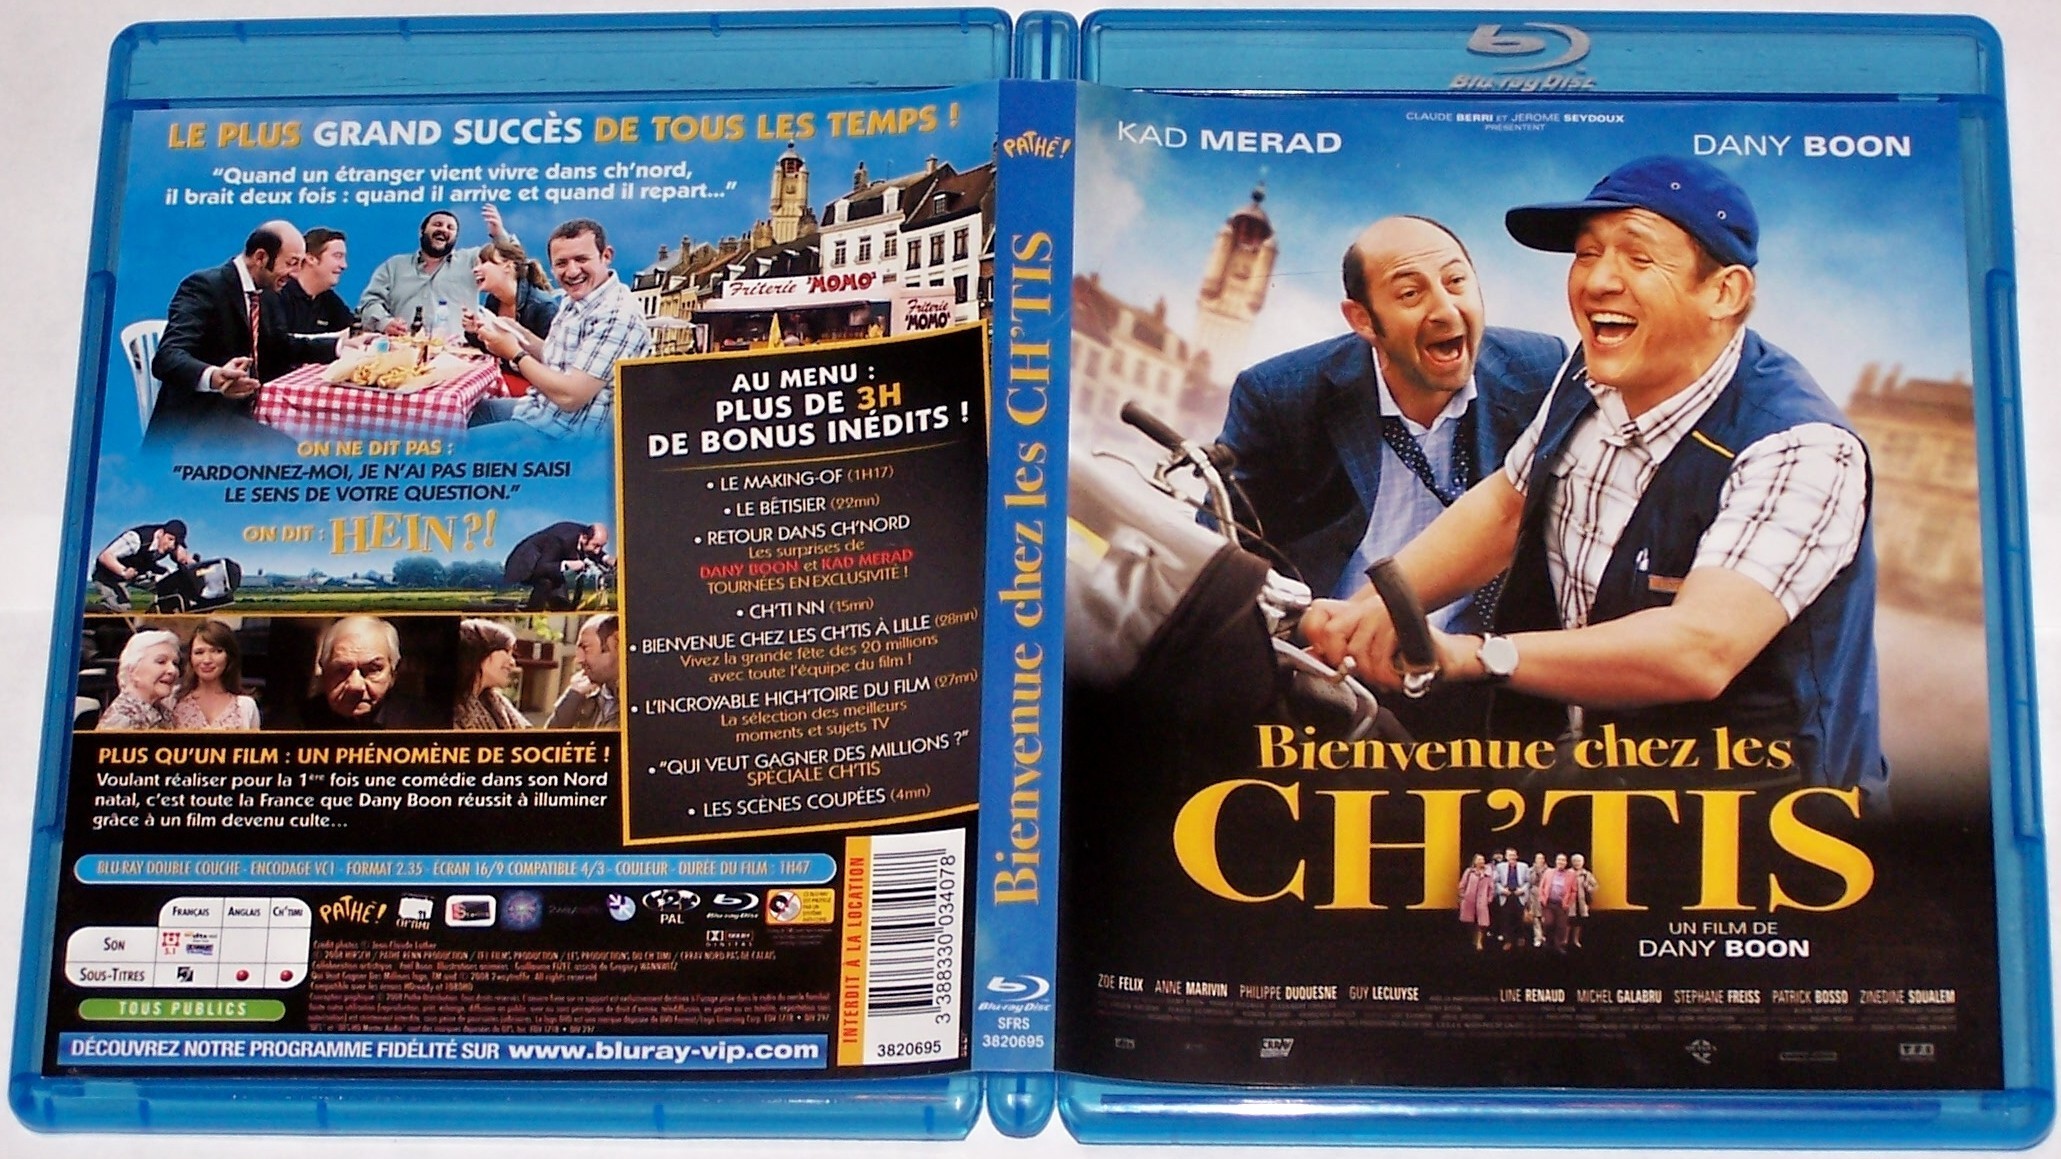 DVD_bienvenue_chez_les_chtis1